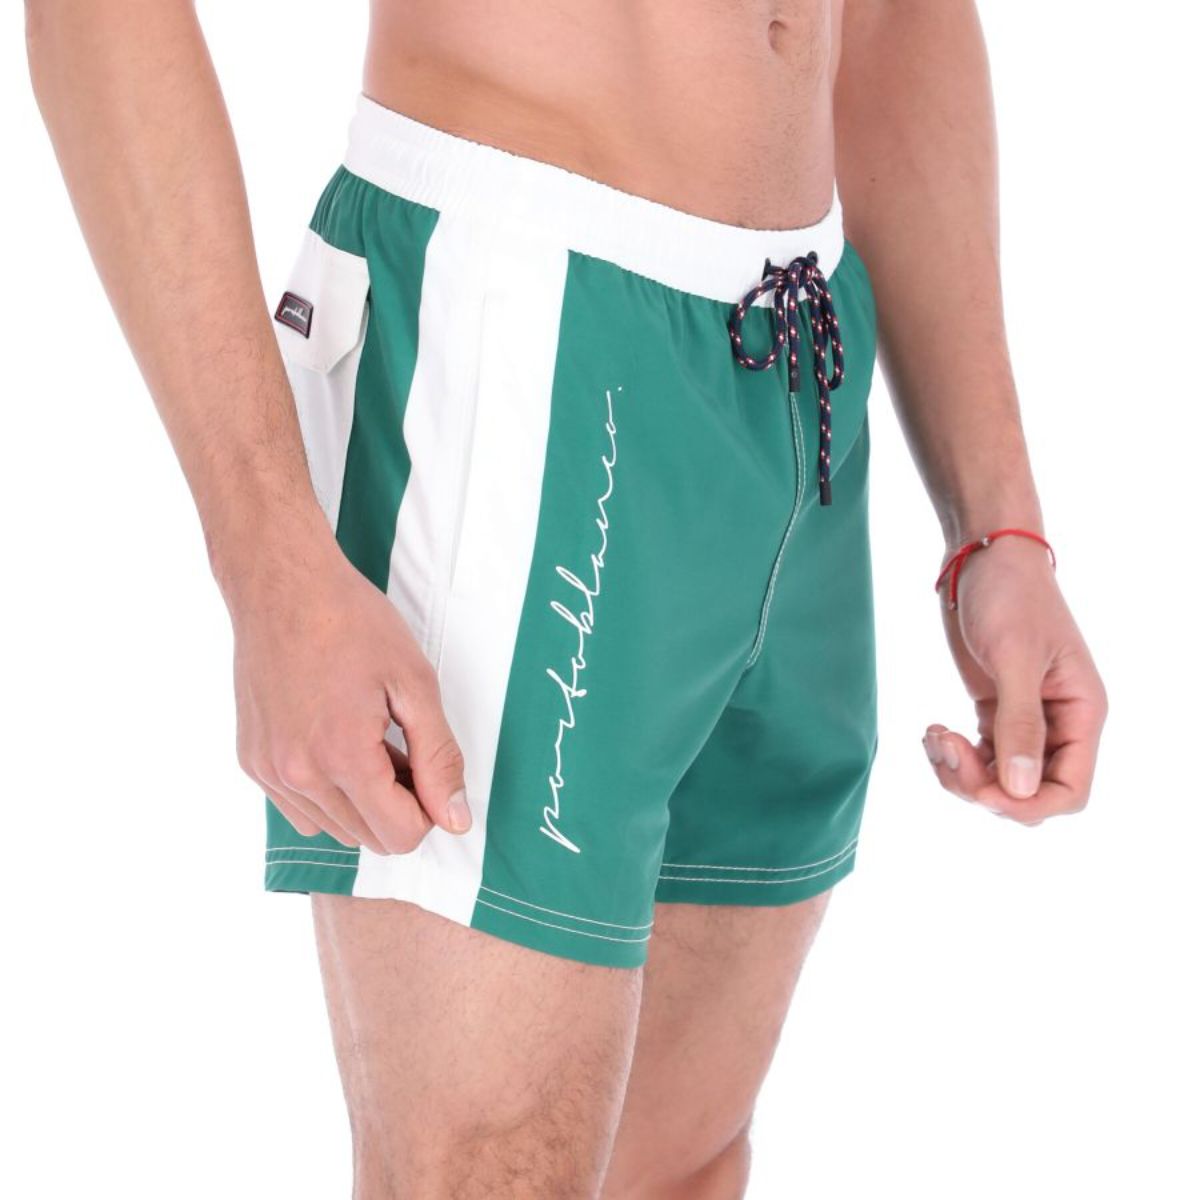 Men's Solid Quick Dry Swim Trunks Green & White